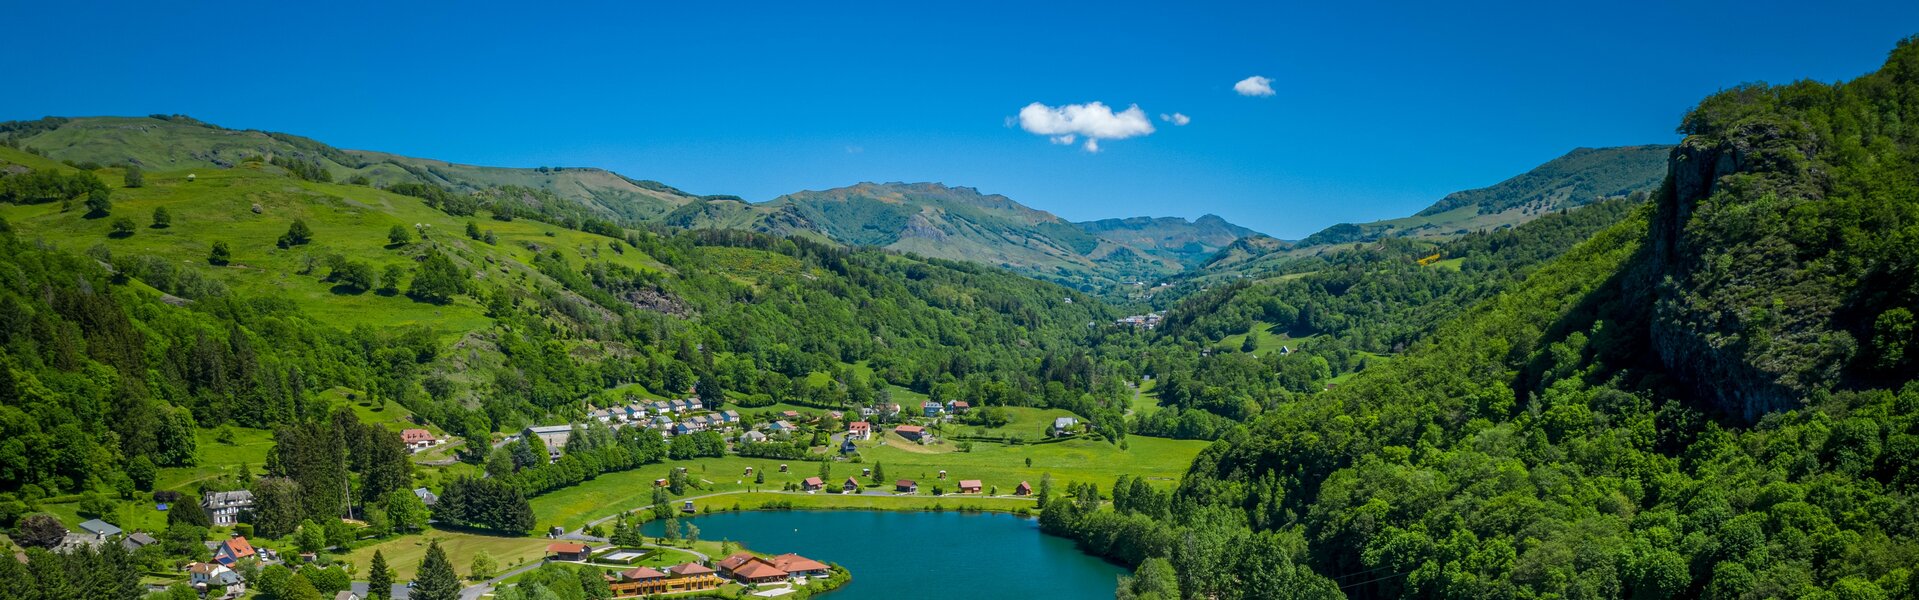 Domaine du Lac des Graves en Auvergne - Cantal : Hôtel, restaurant, multi activités.